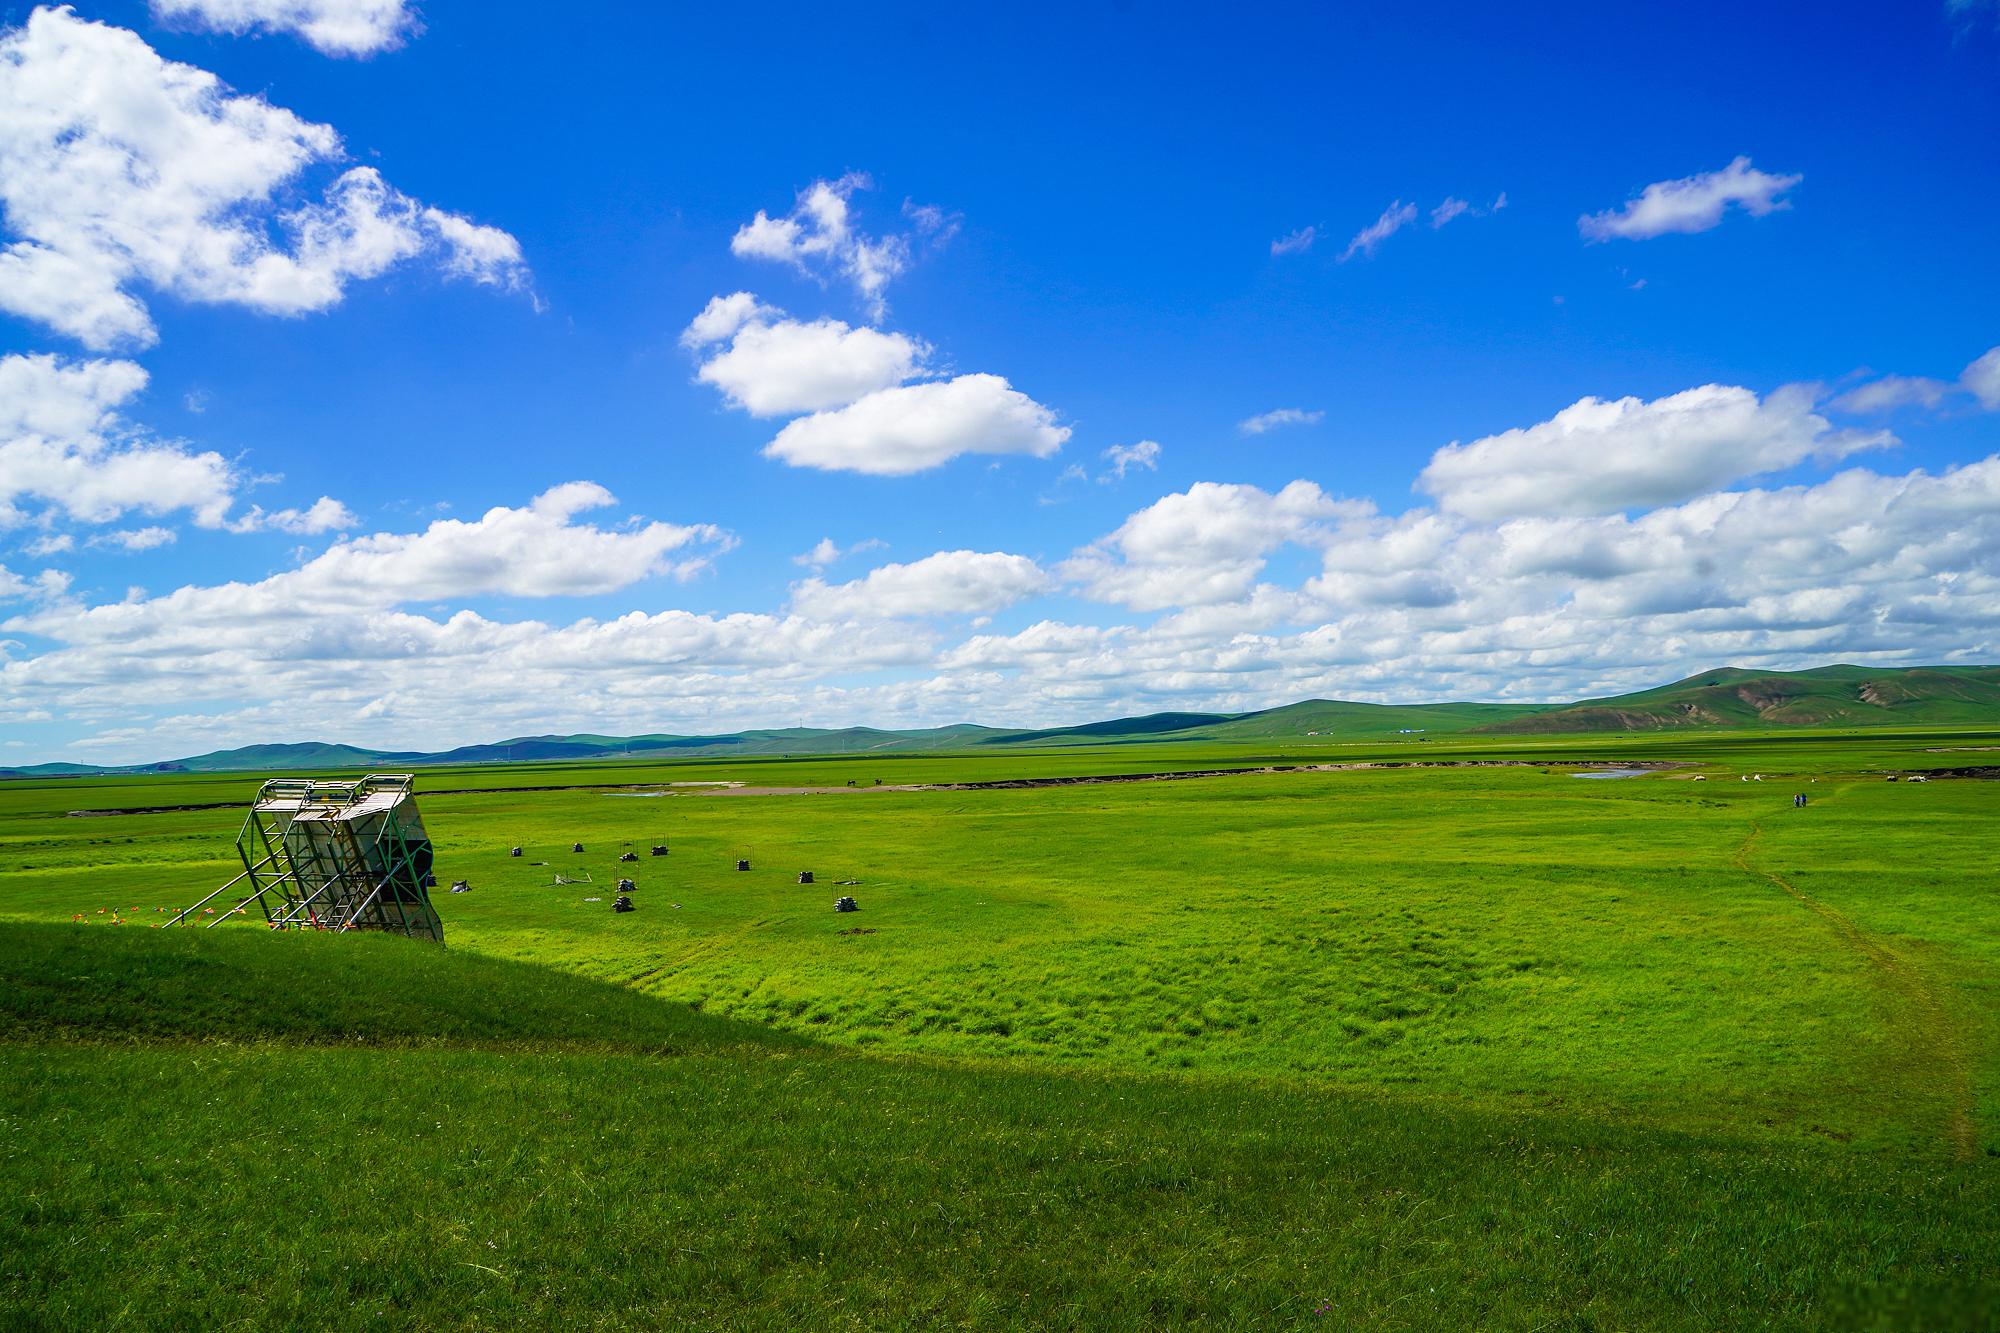 乌拉盖草原:一片宁静与美丽的自然风光 乌拉盖草原,位于中国内蒙古